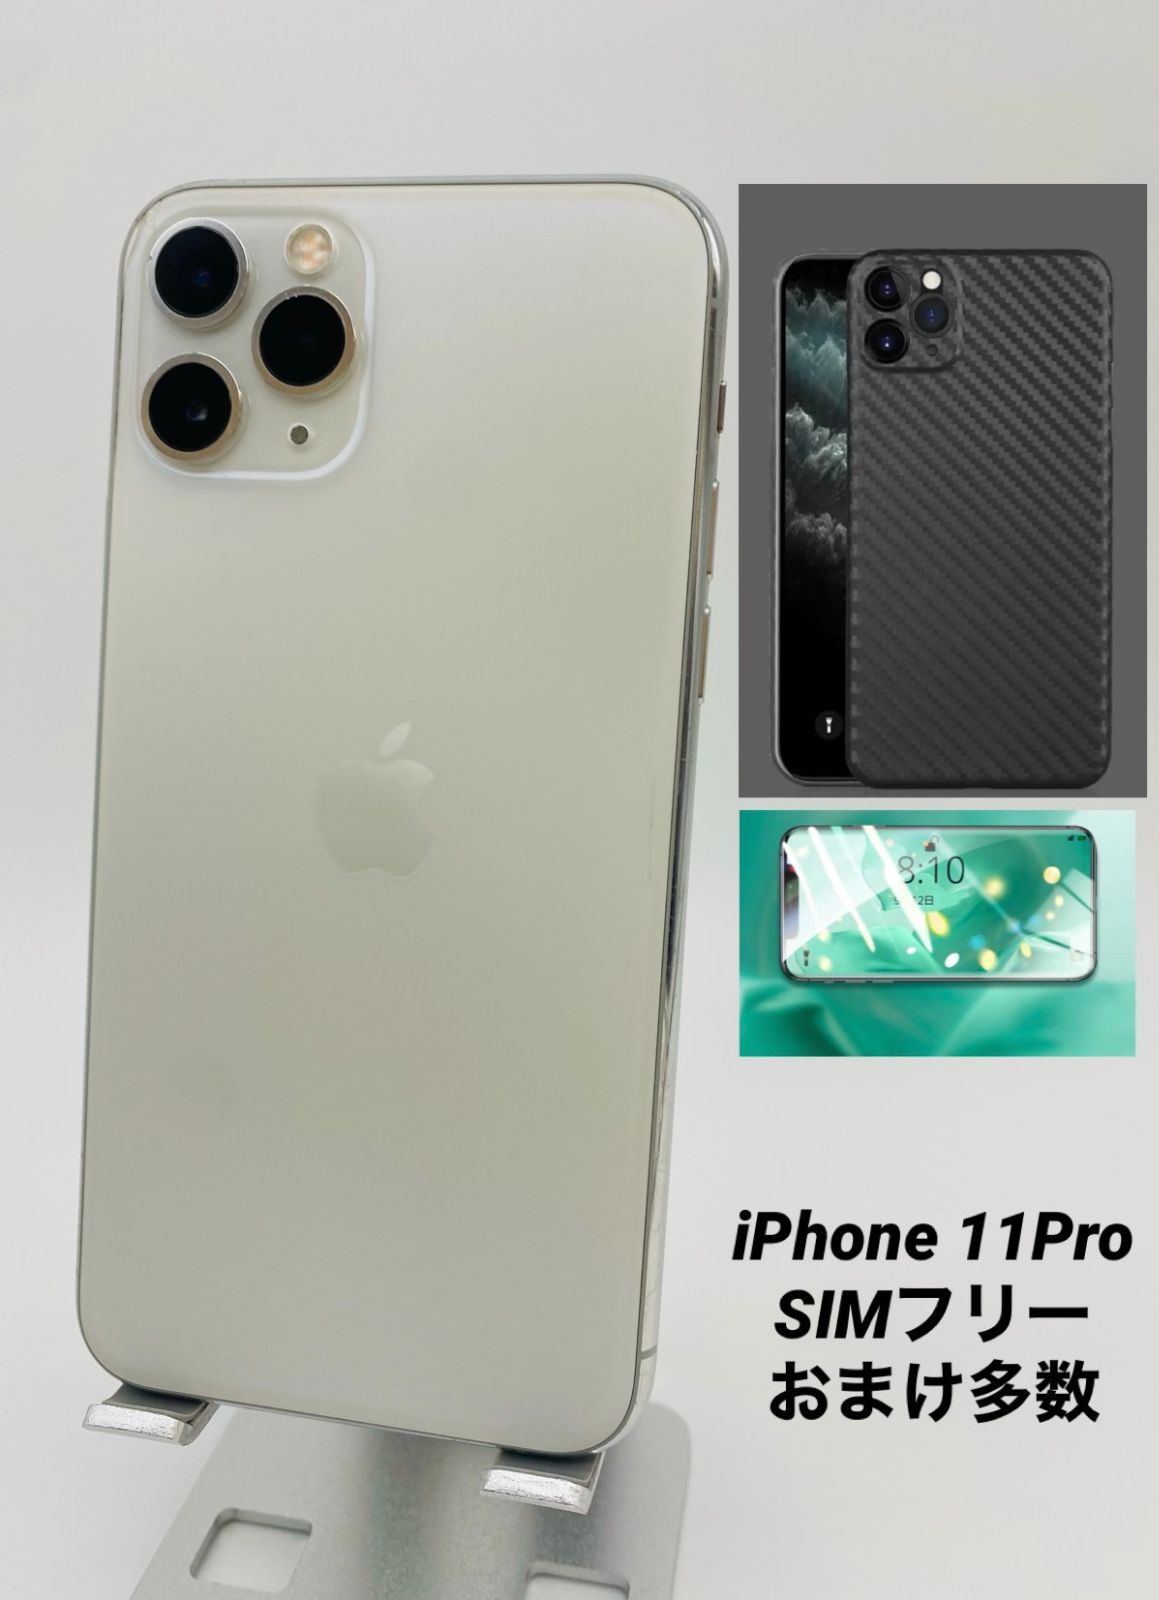 iPhone 11 Pro 64GB シルバー/シムフリー/新品バッテリー/極薄ケース